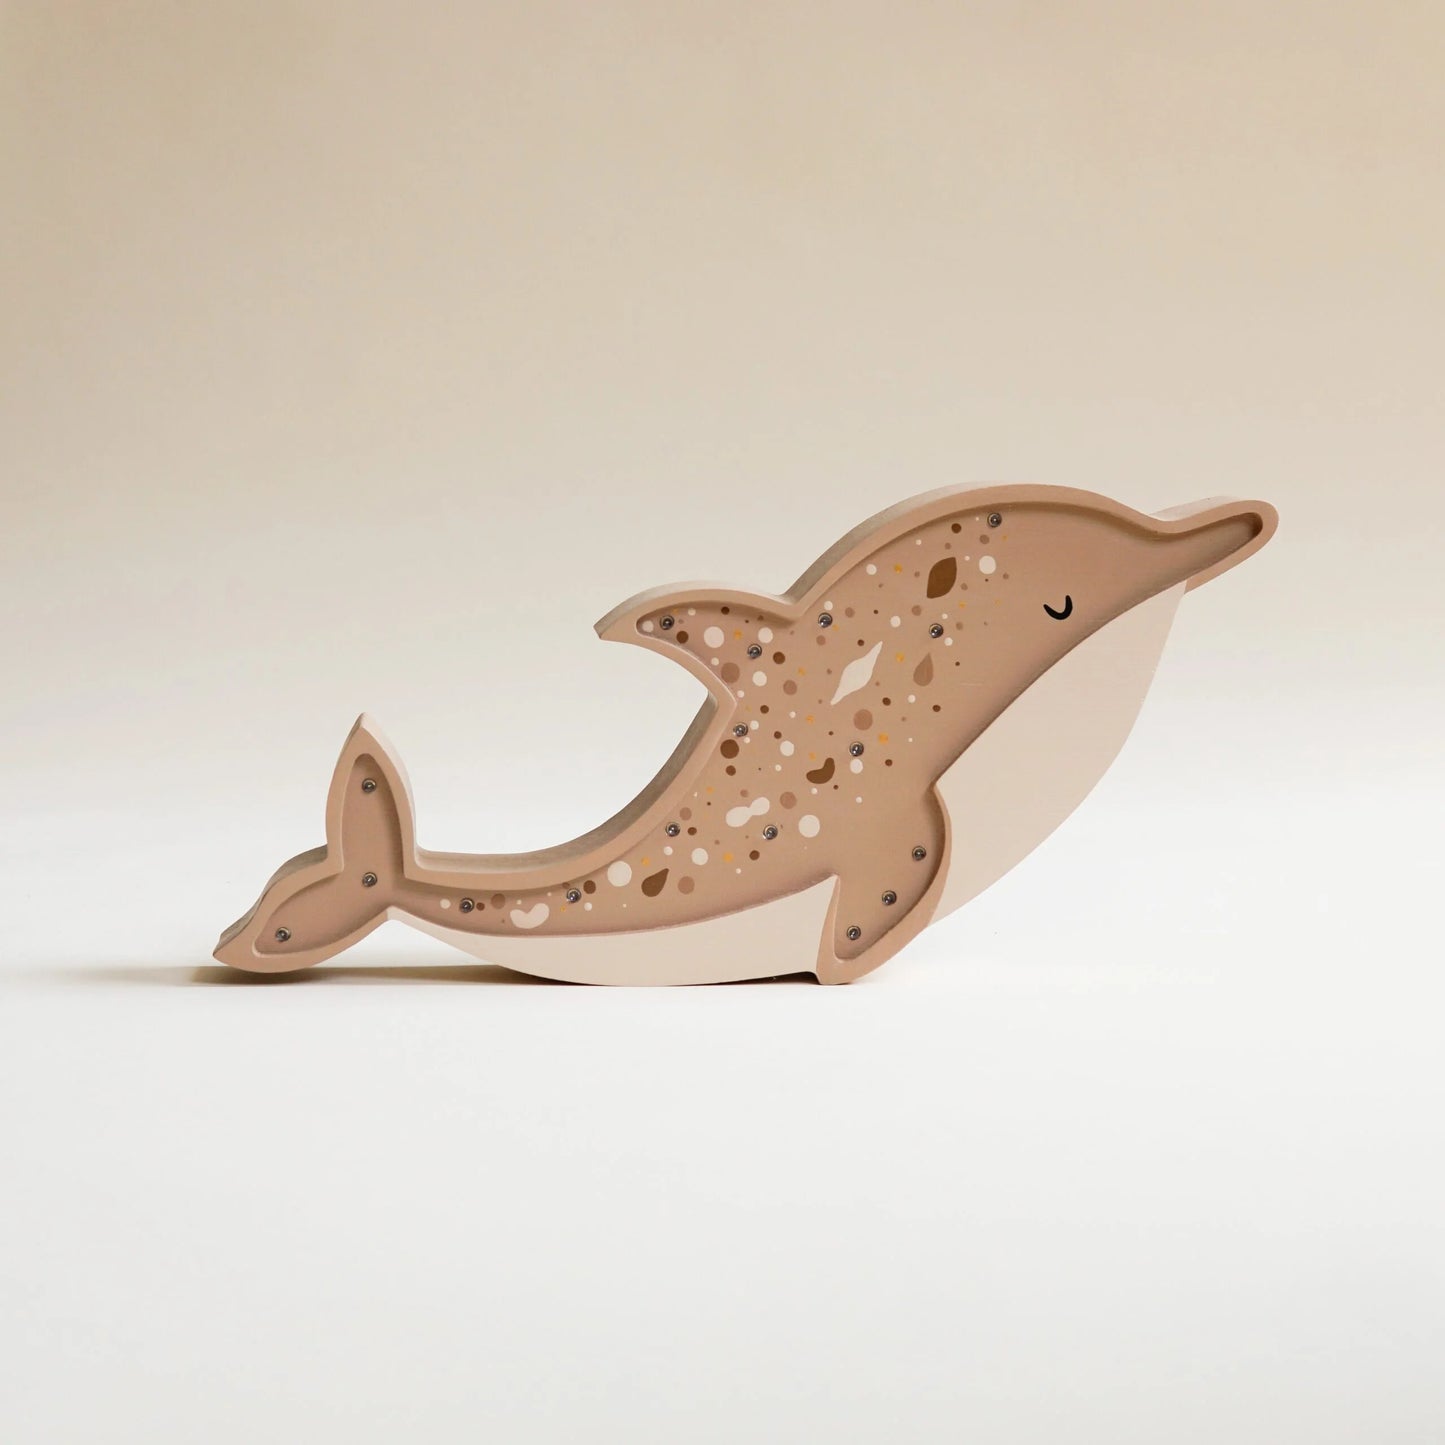 Drewniana Lampka Delfin – Brązowy